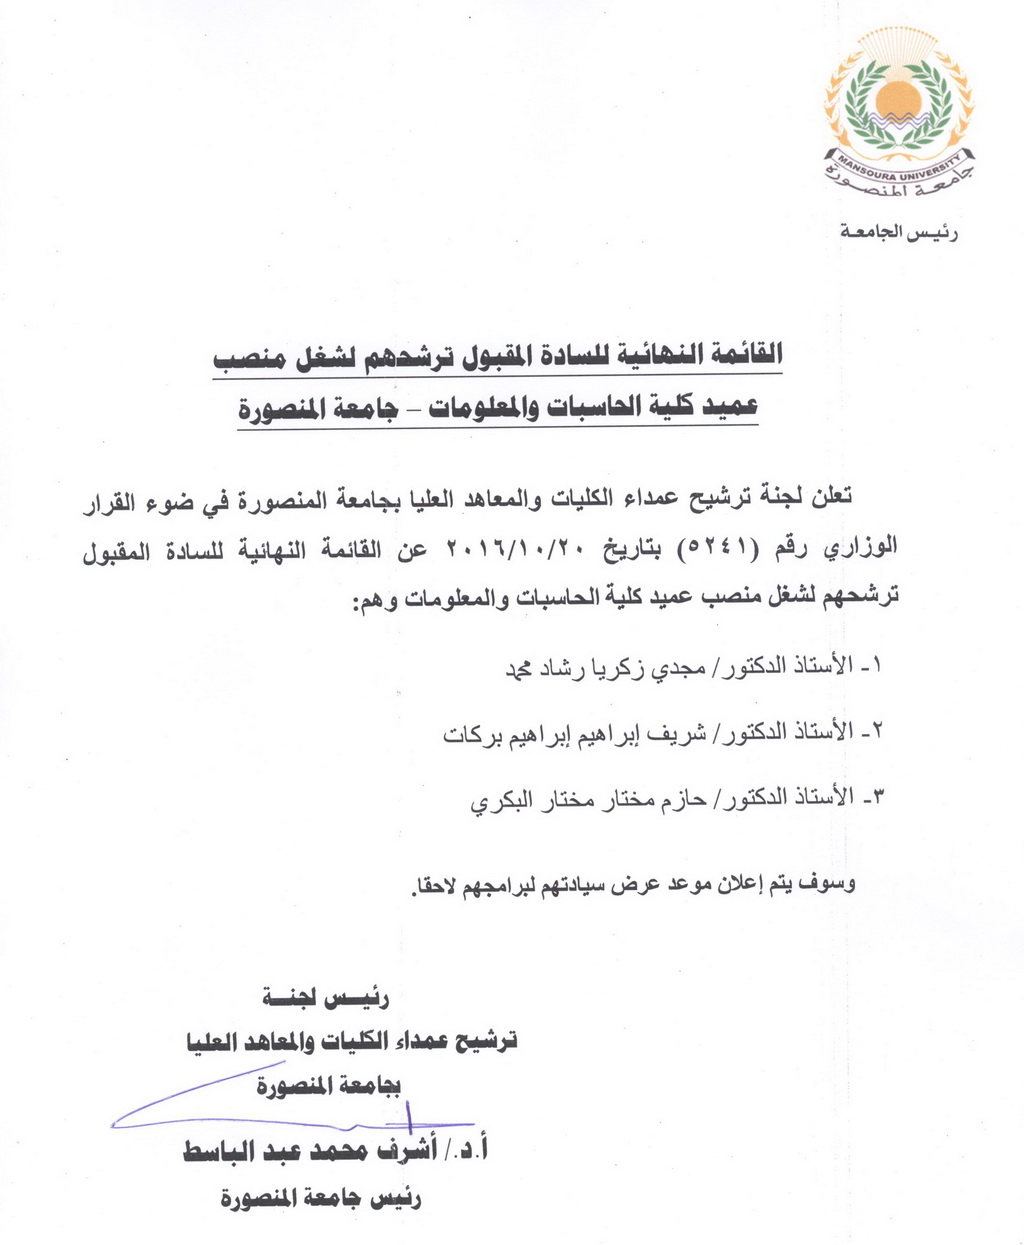 القائمة النهائية للسادة المقبول ترشيحهم لشغل منصب عميد كلية الحاسبات والمعلومات - جامعة المنصورة